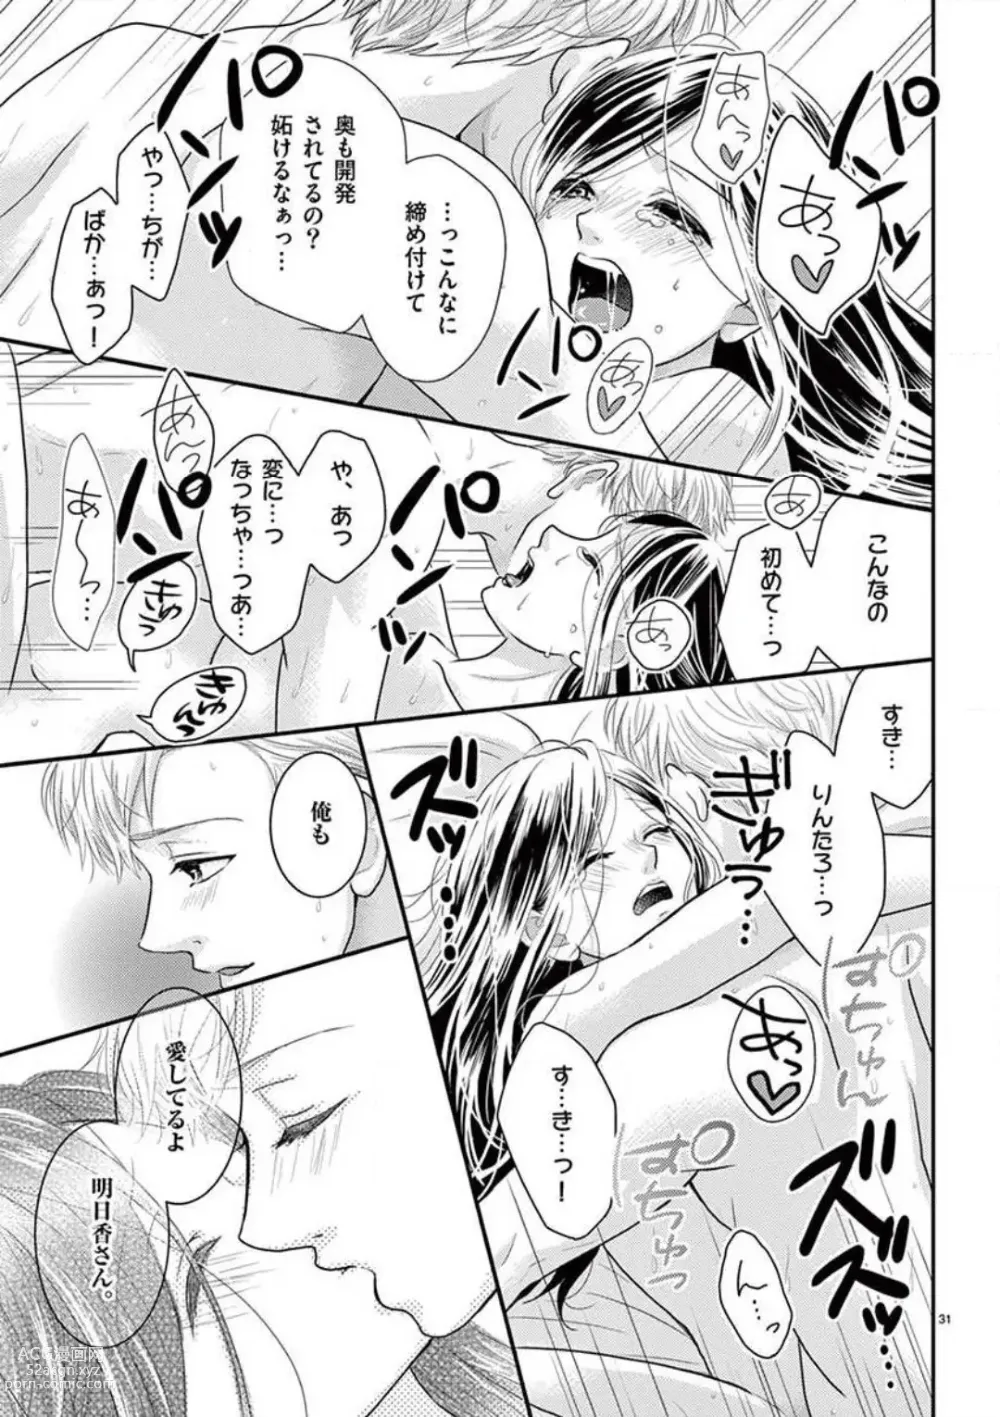 Page 31 of manga Yajū Suitchi ON!〜 Junjō Wanko wa Hageshi Sugi 〜